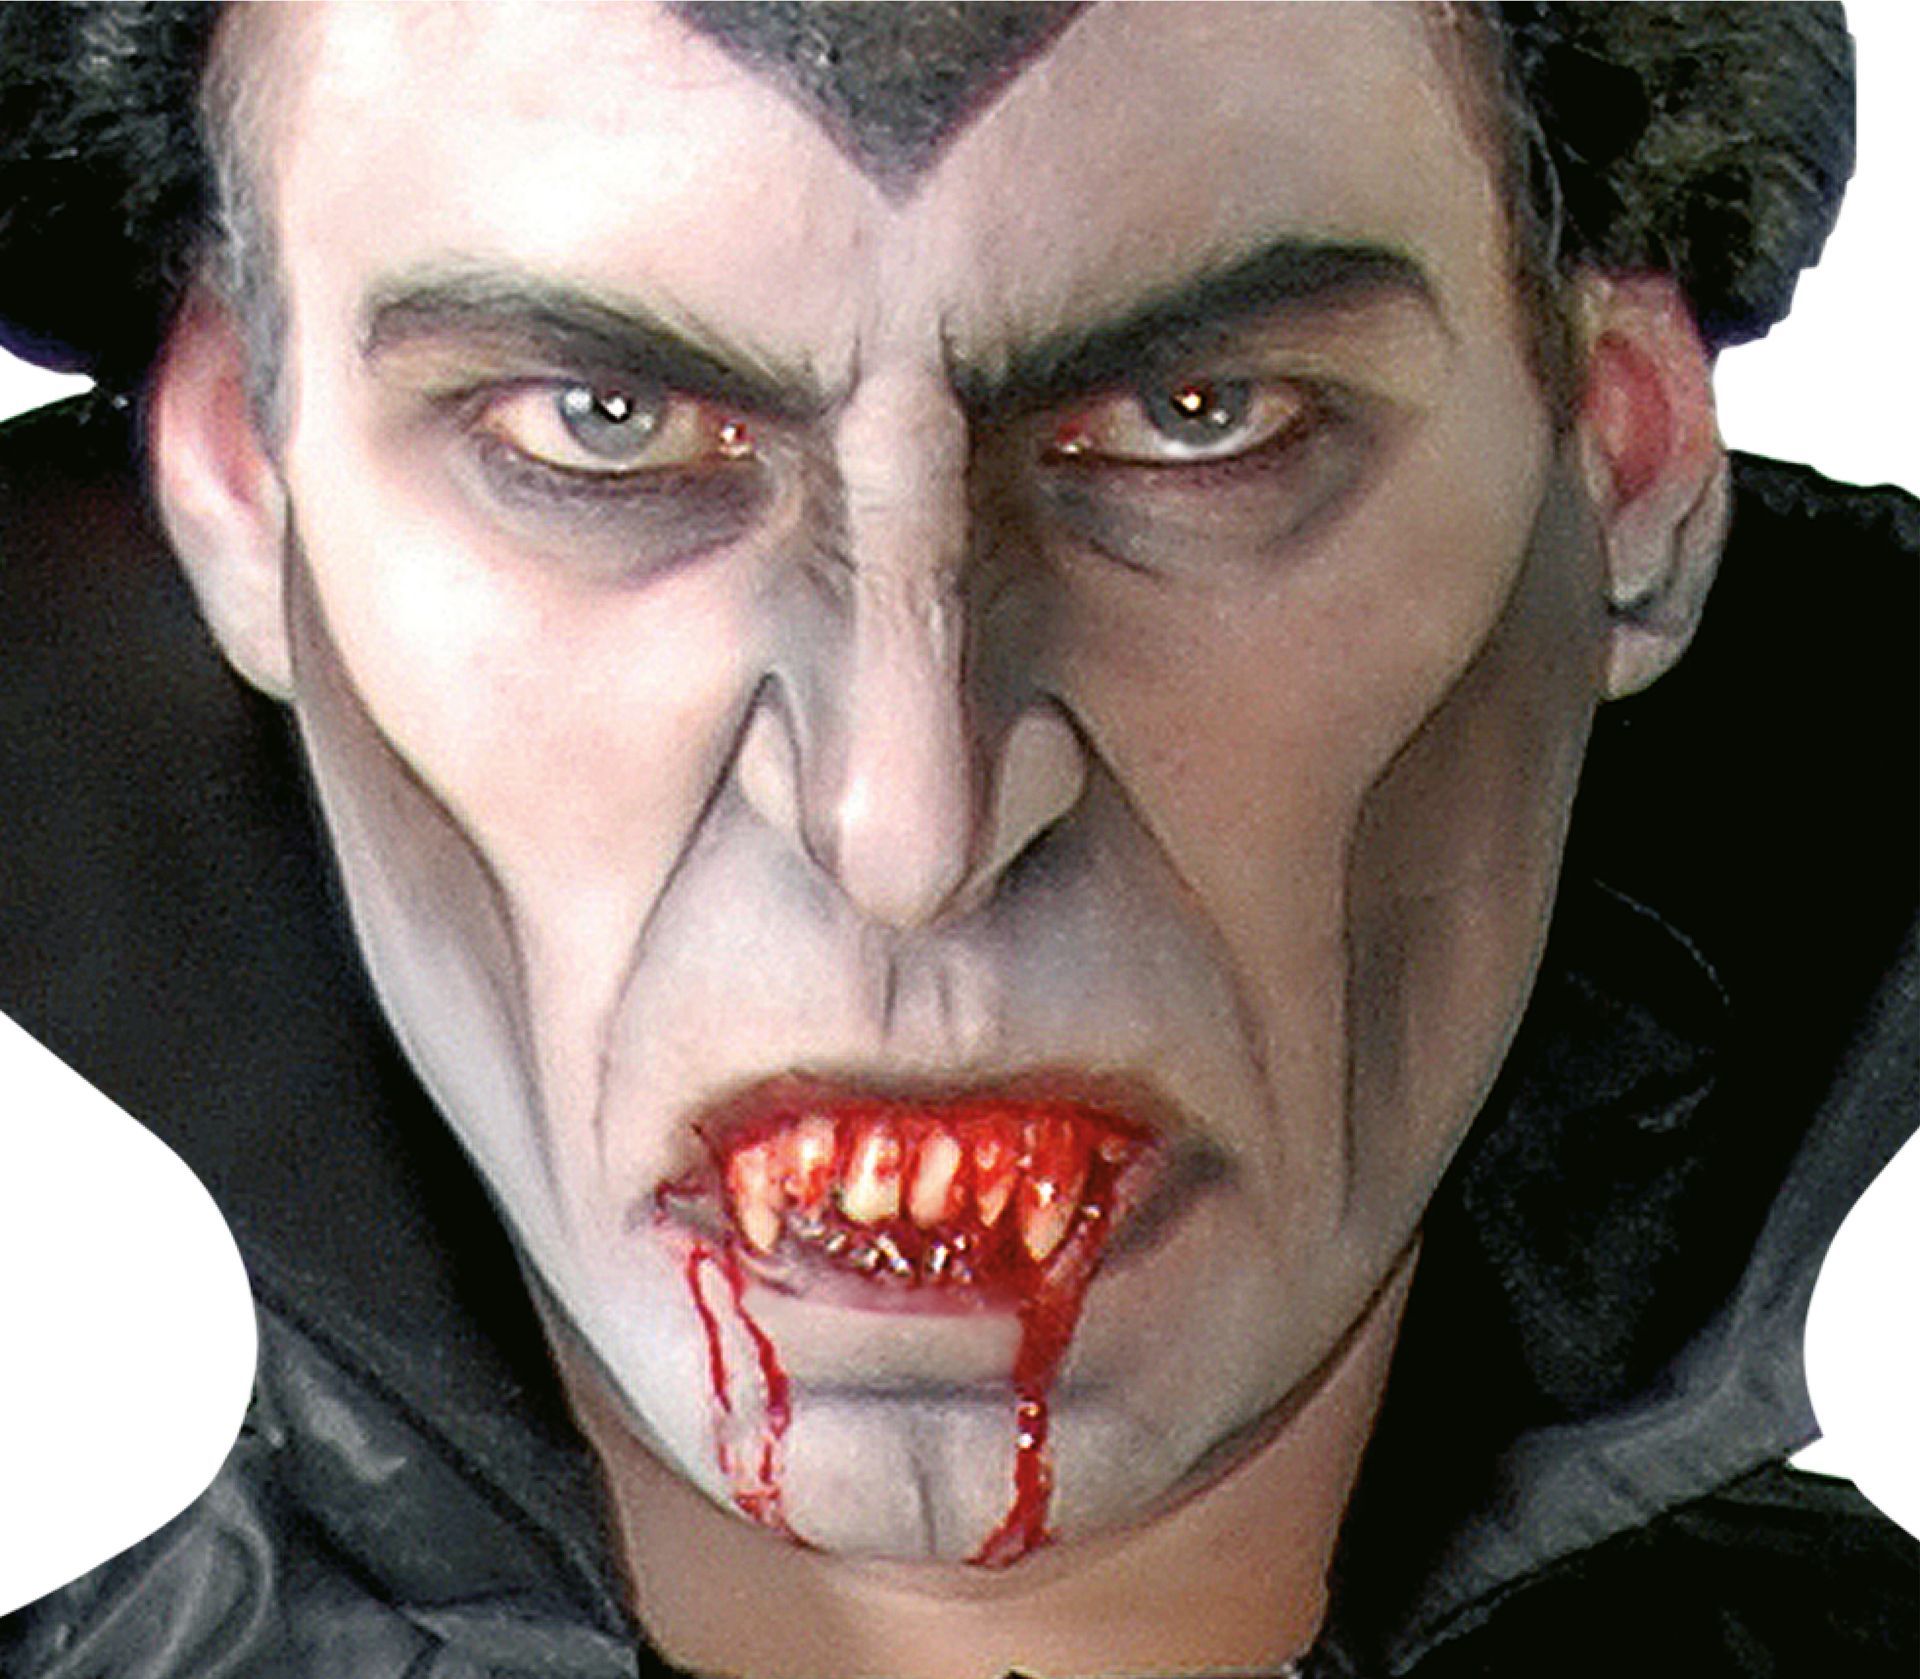 Dracula kunstgebit